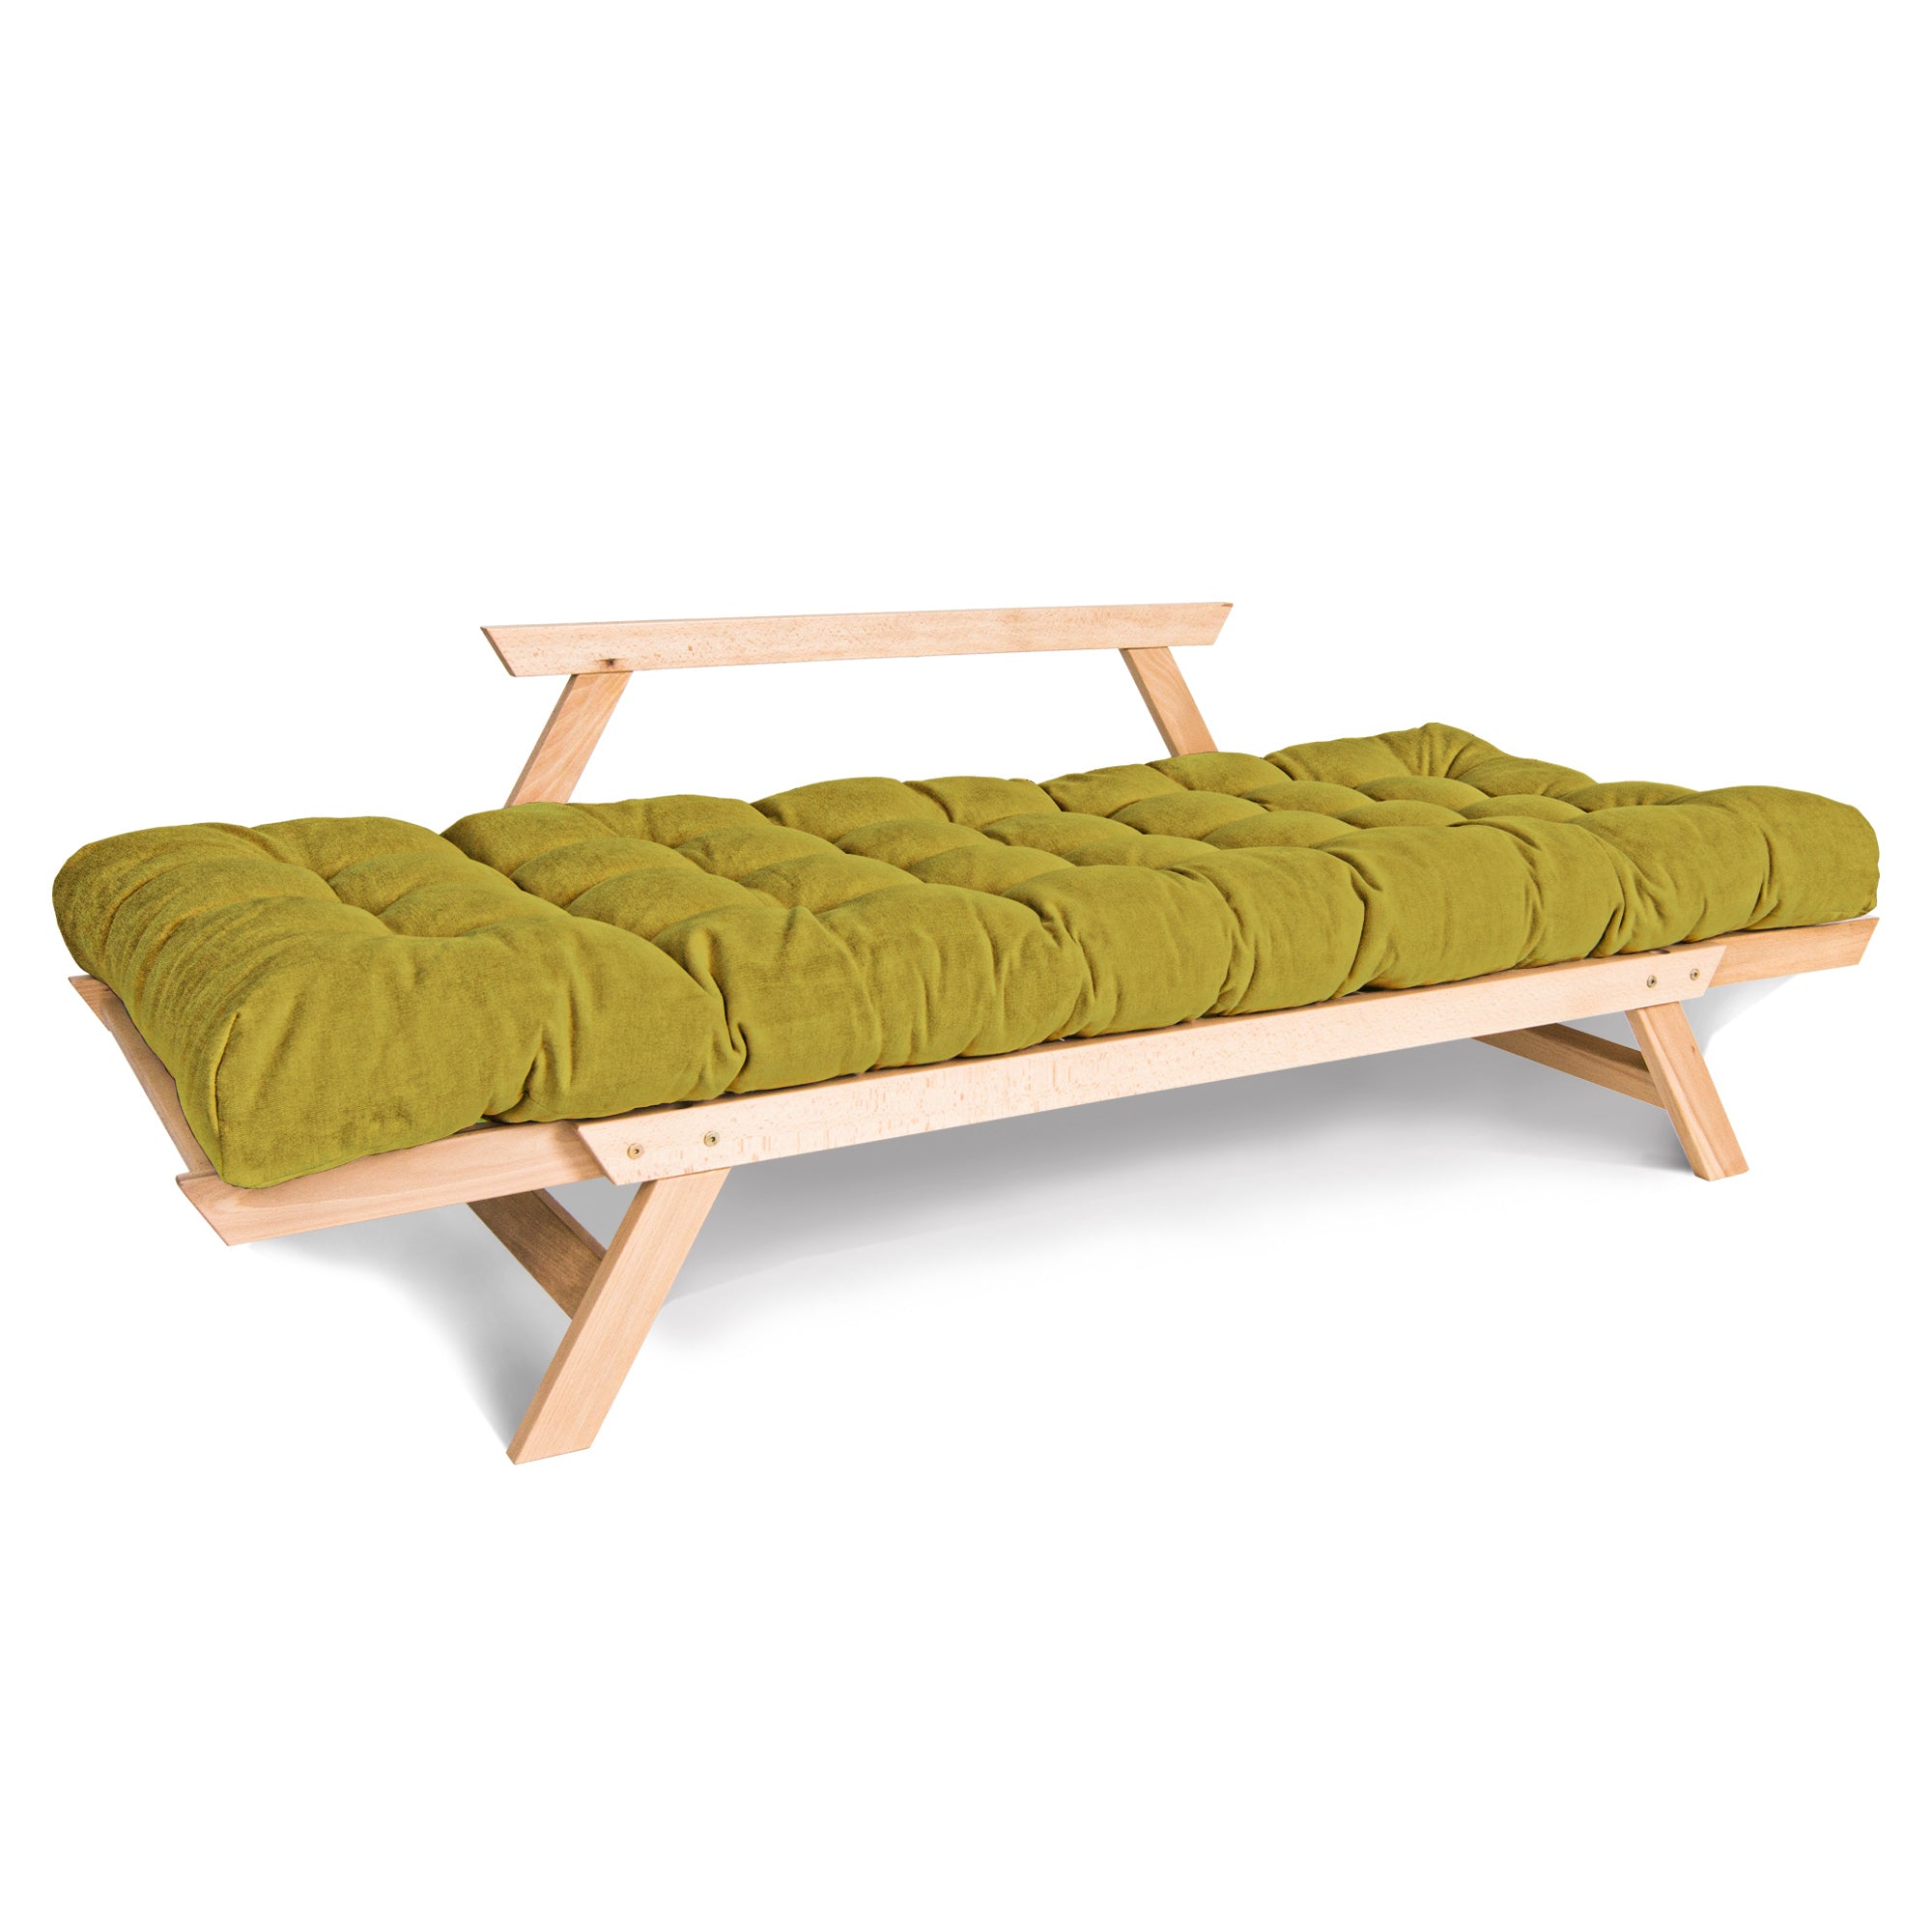 ALLEGRO Canapé-lit, cadre en bois de hêtre, couleur naturelle